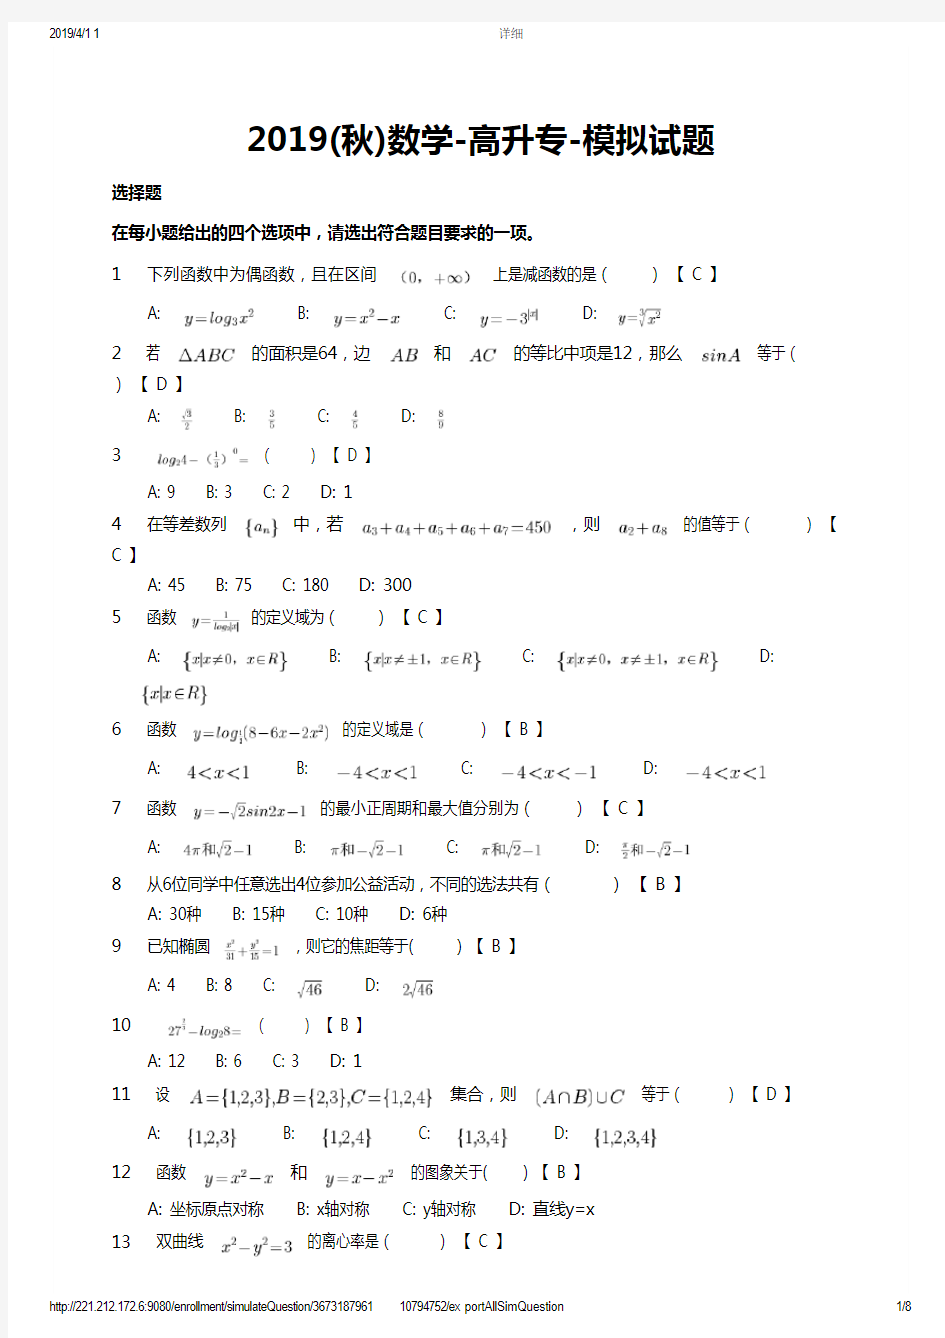 2019(秋)数学-高升专-模拟试题